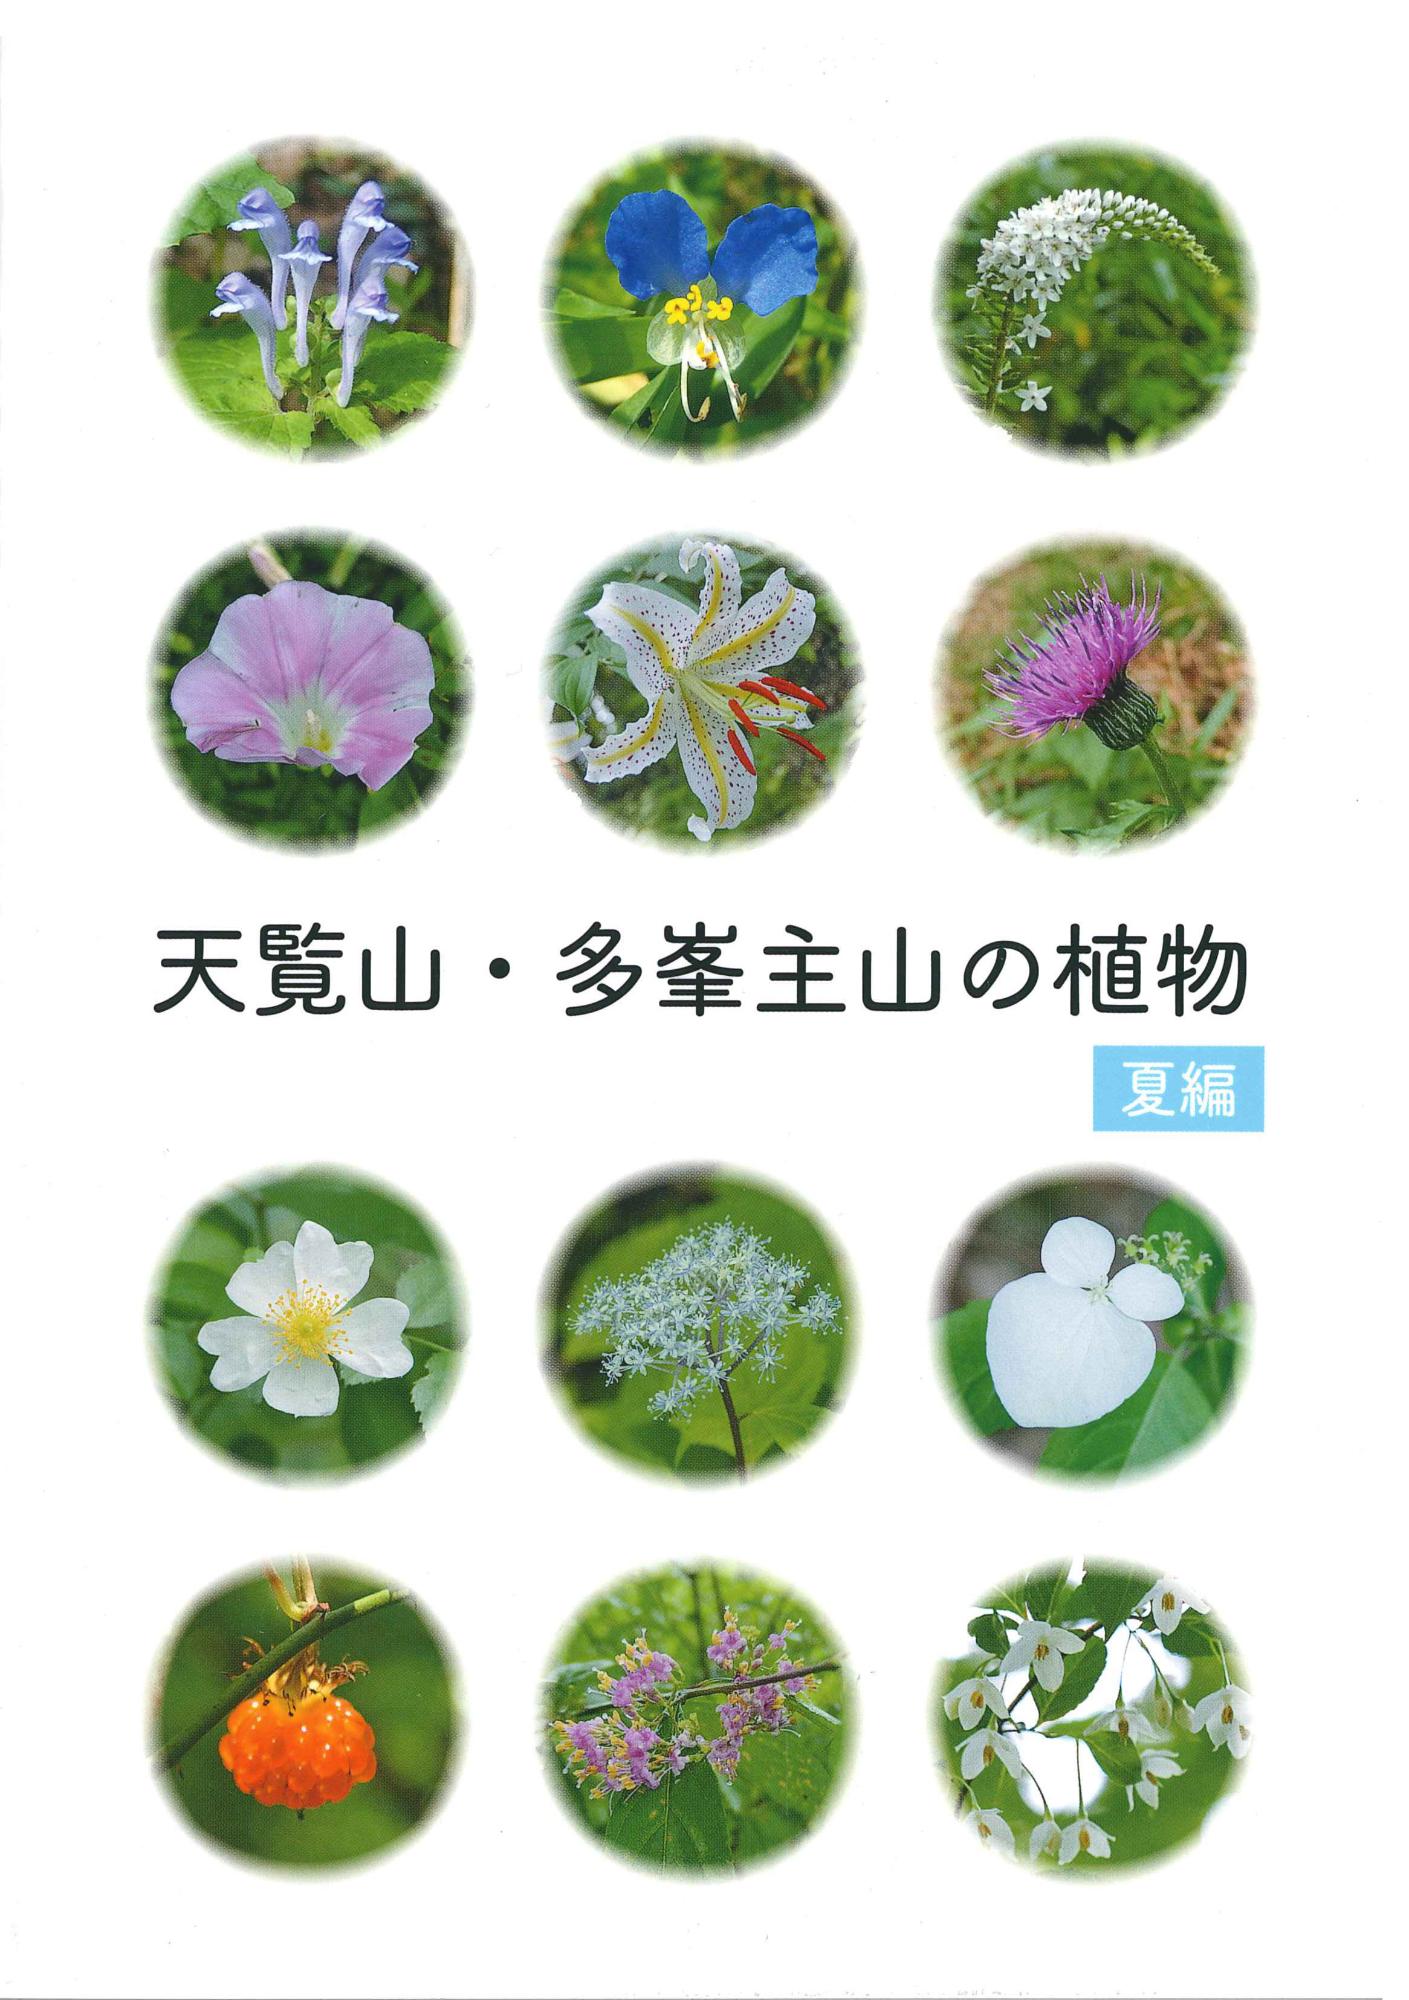 天覧山・多峯主山の植物夏編の表紙の写真